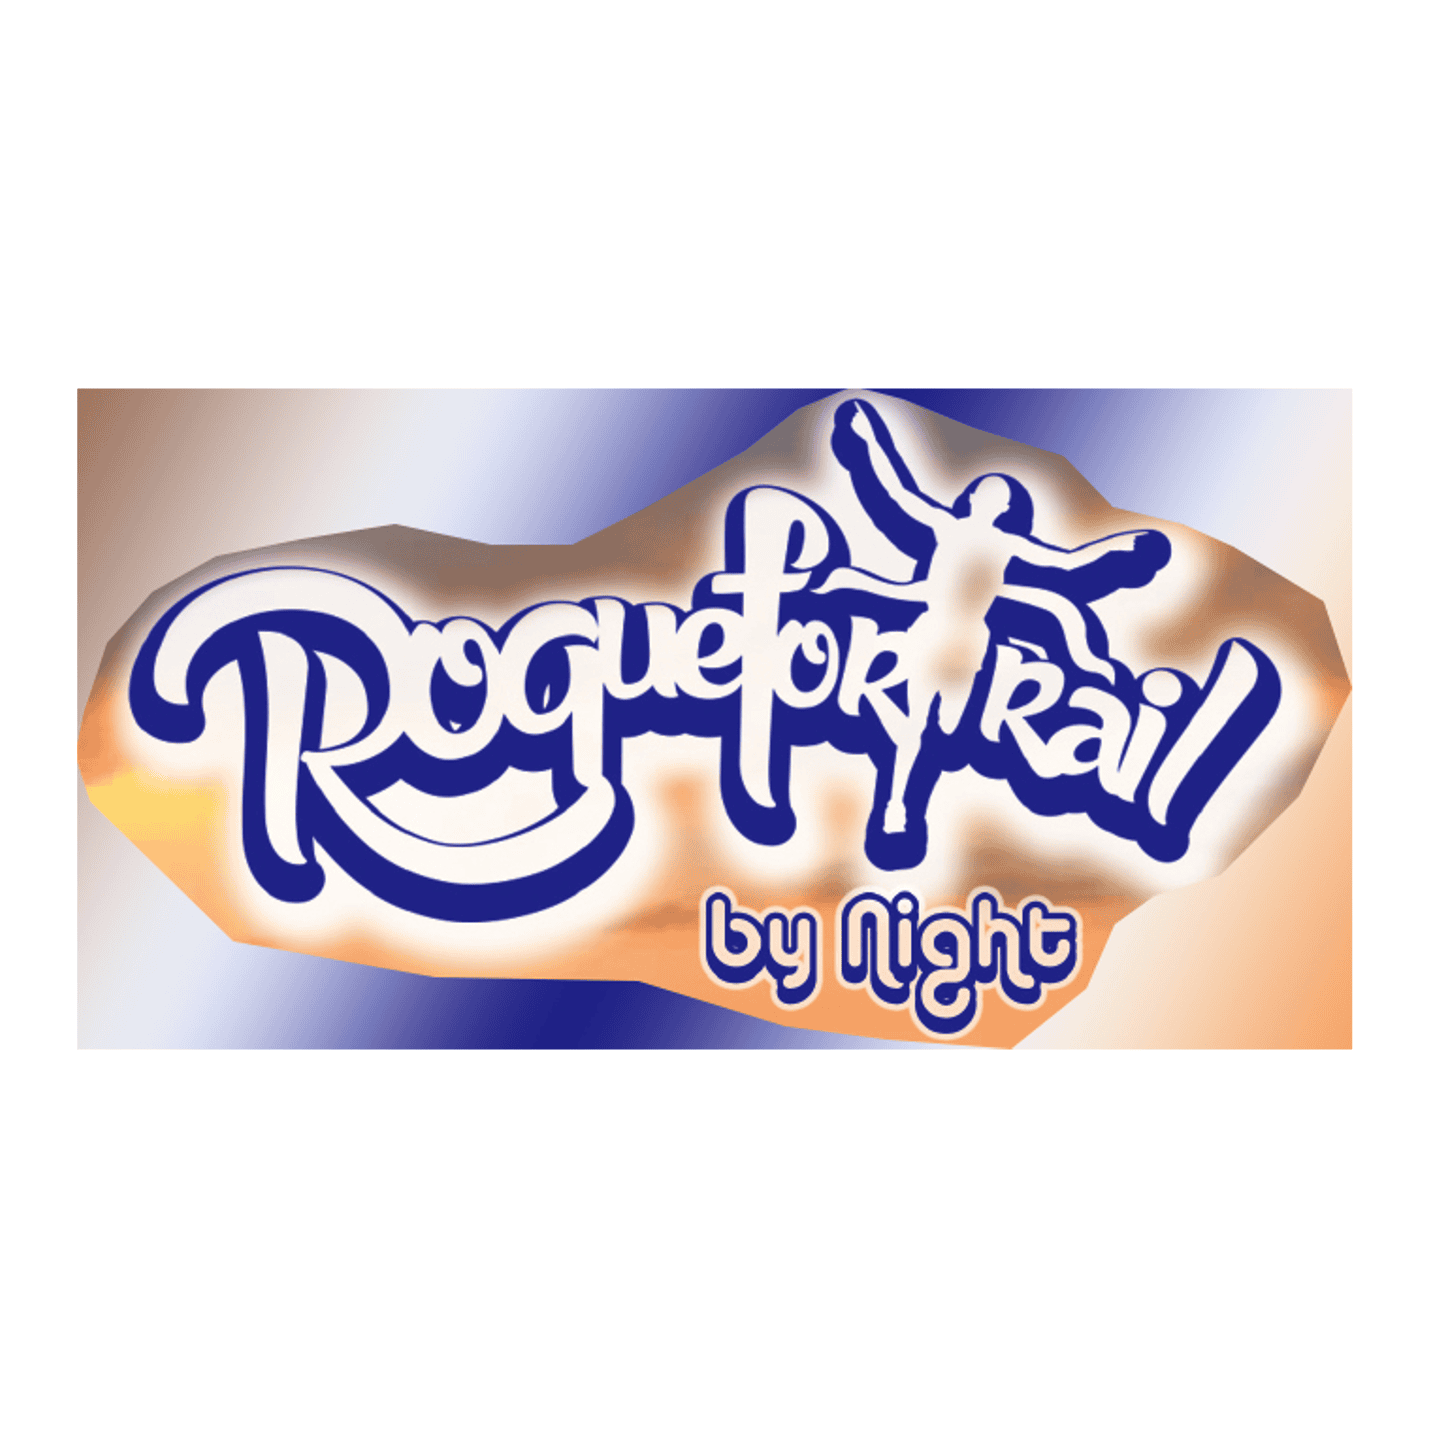 Logo Roquefortrail